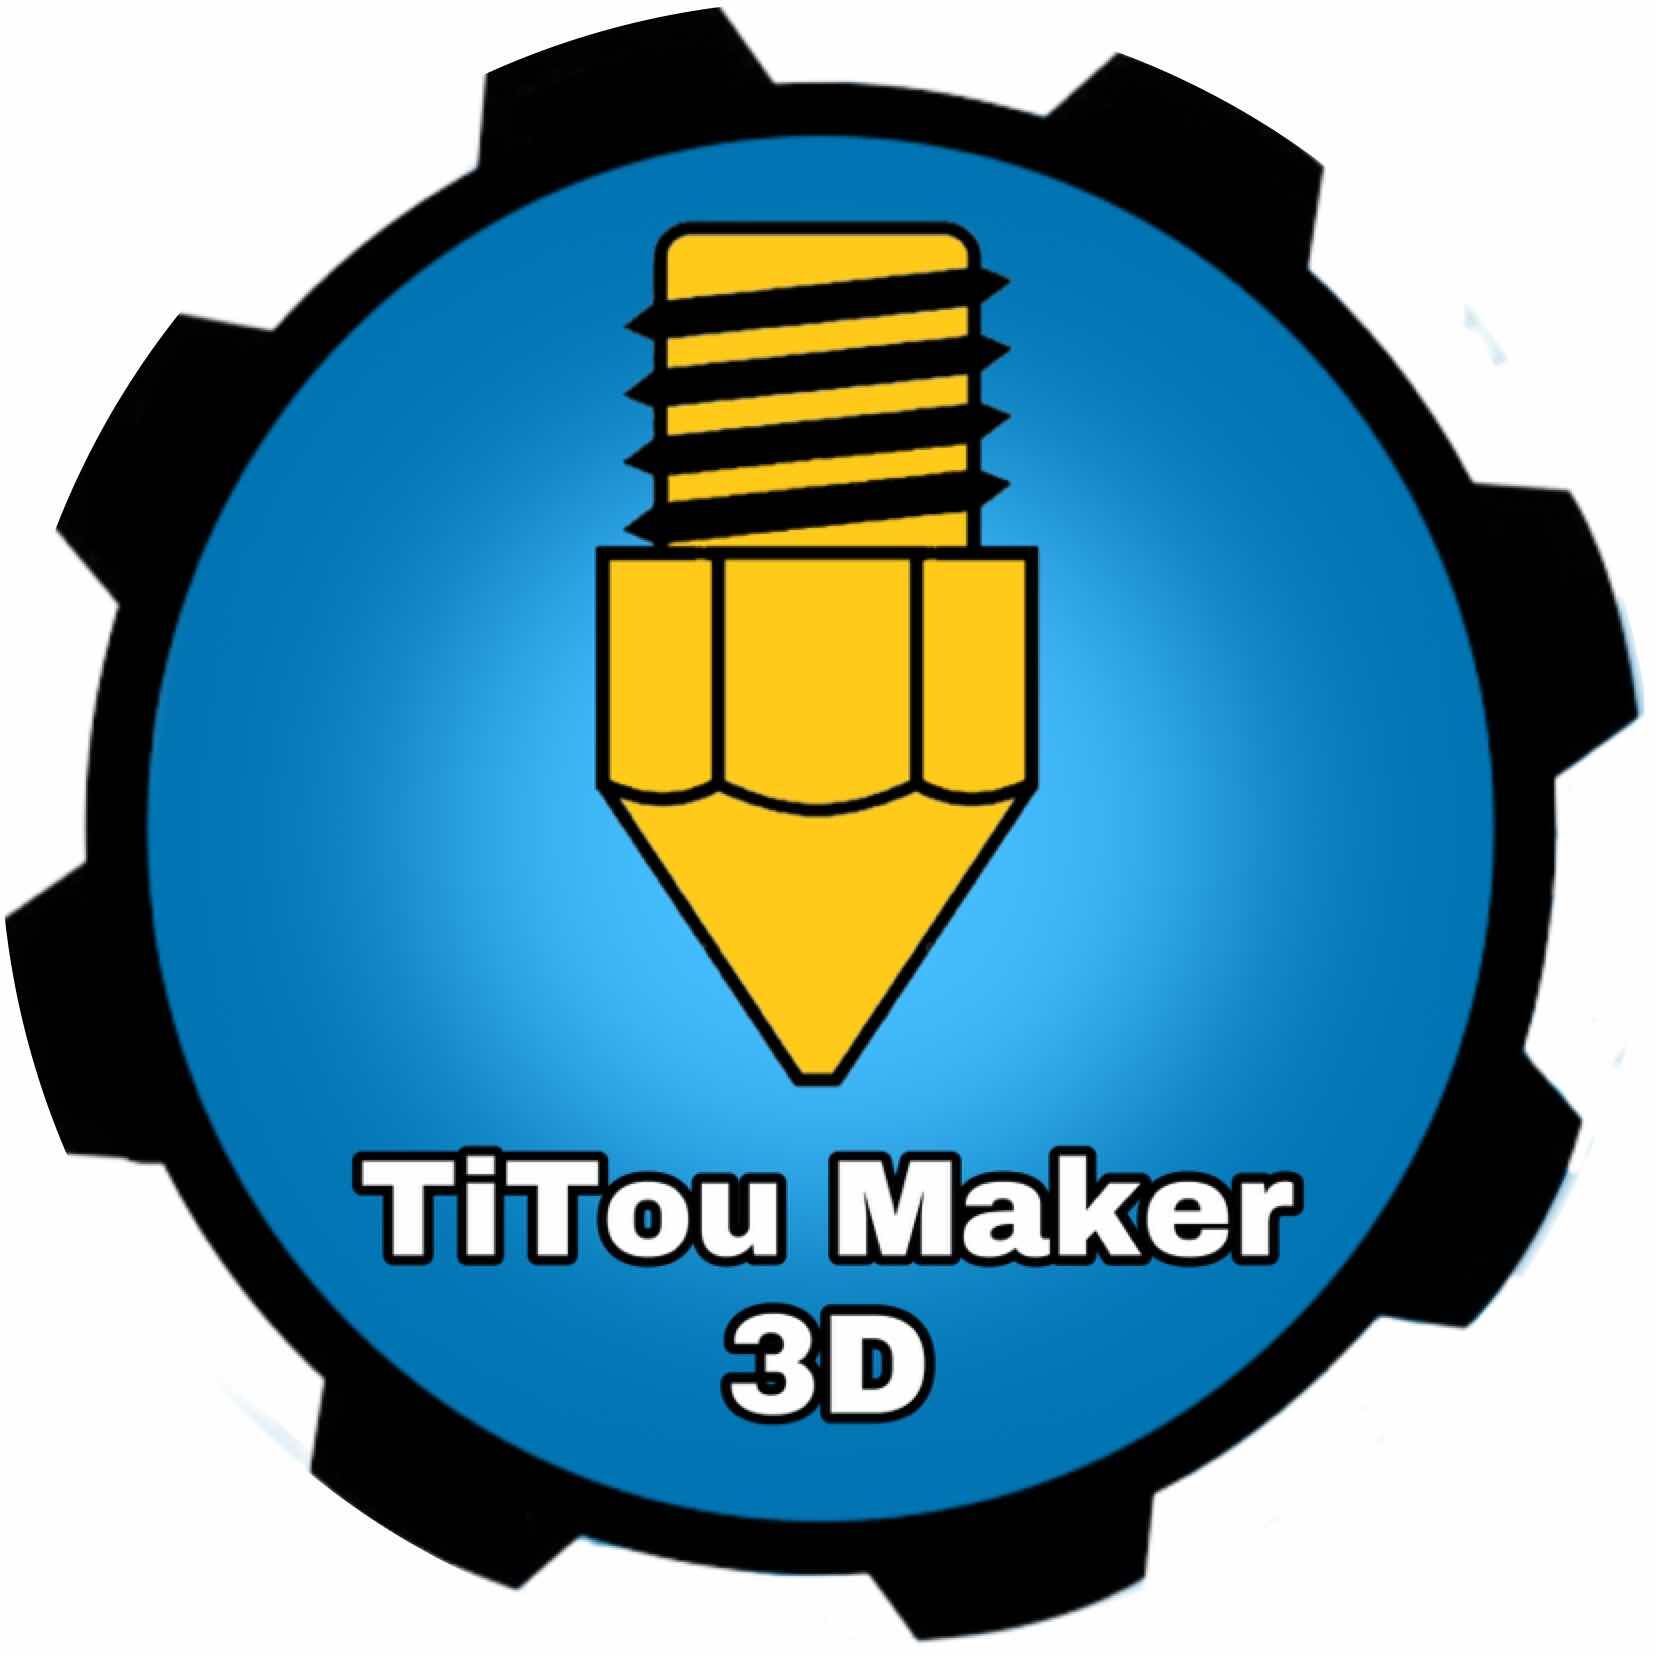 TiTou_Maker_3D